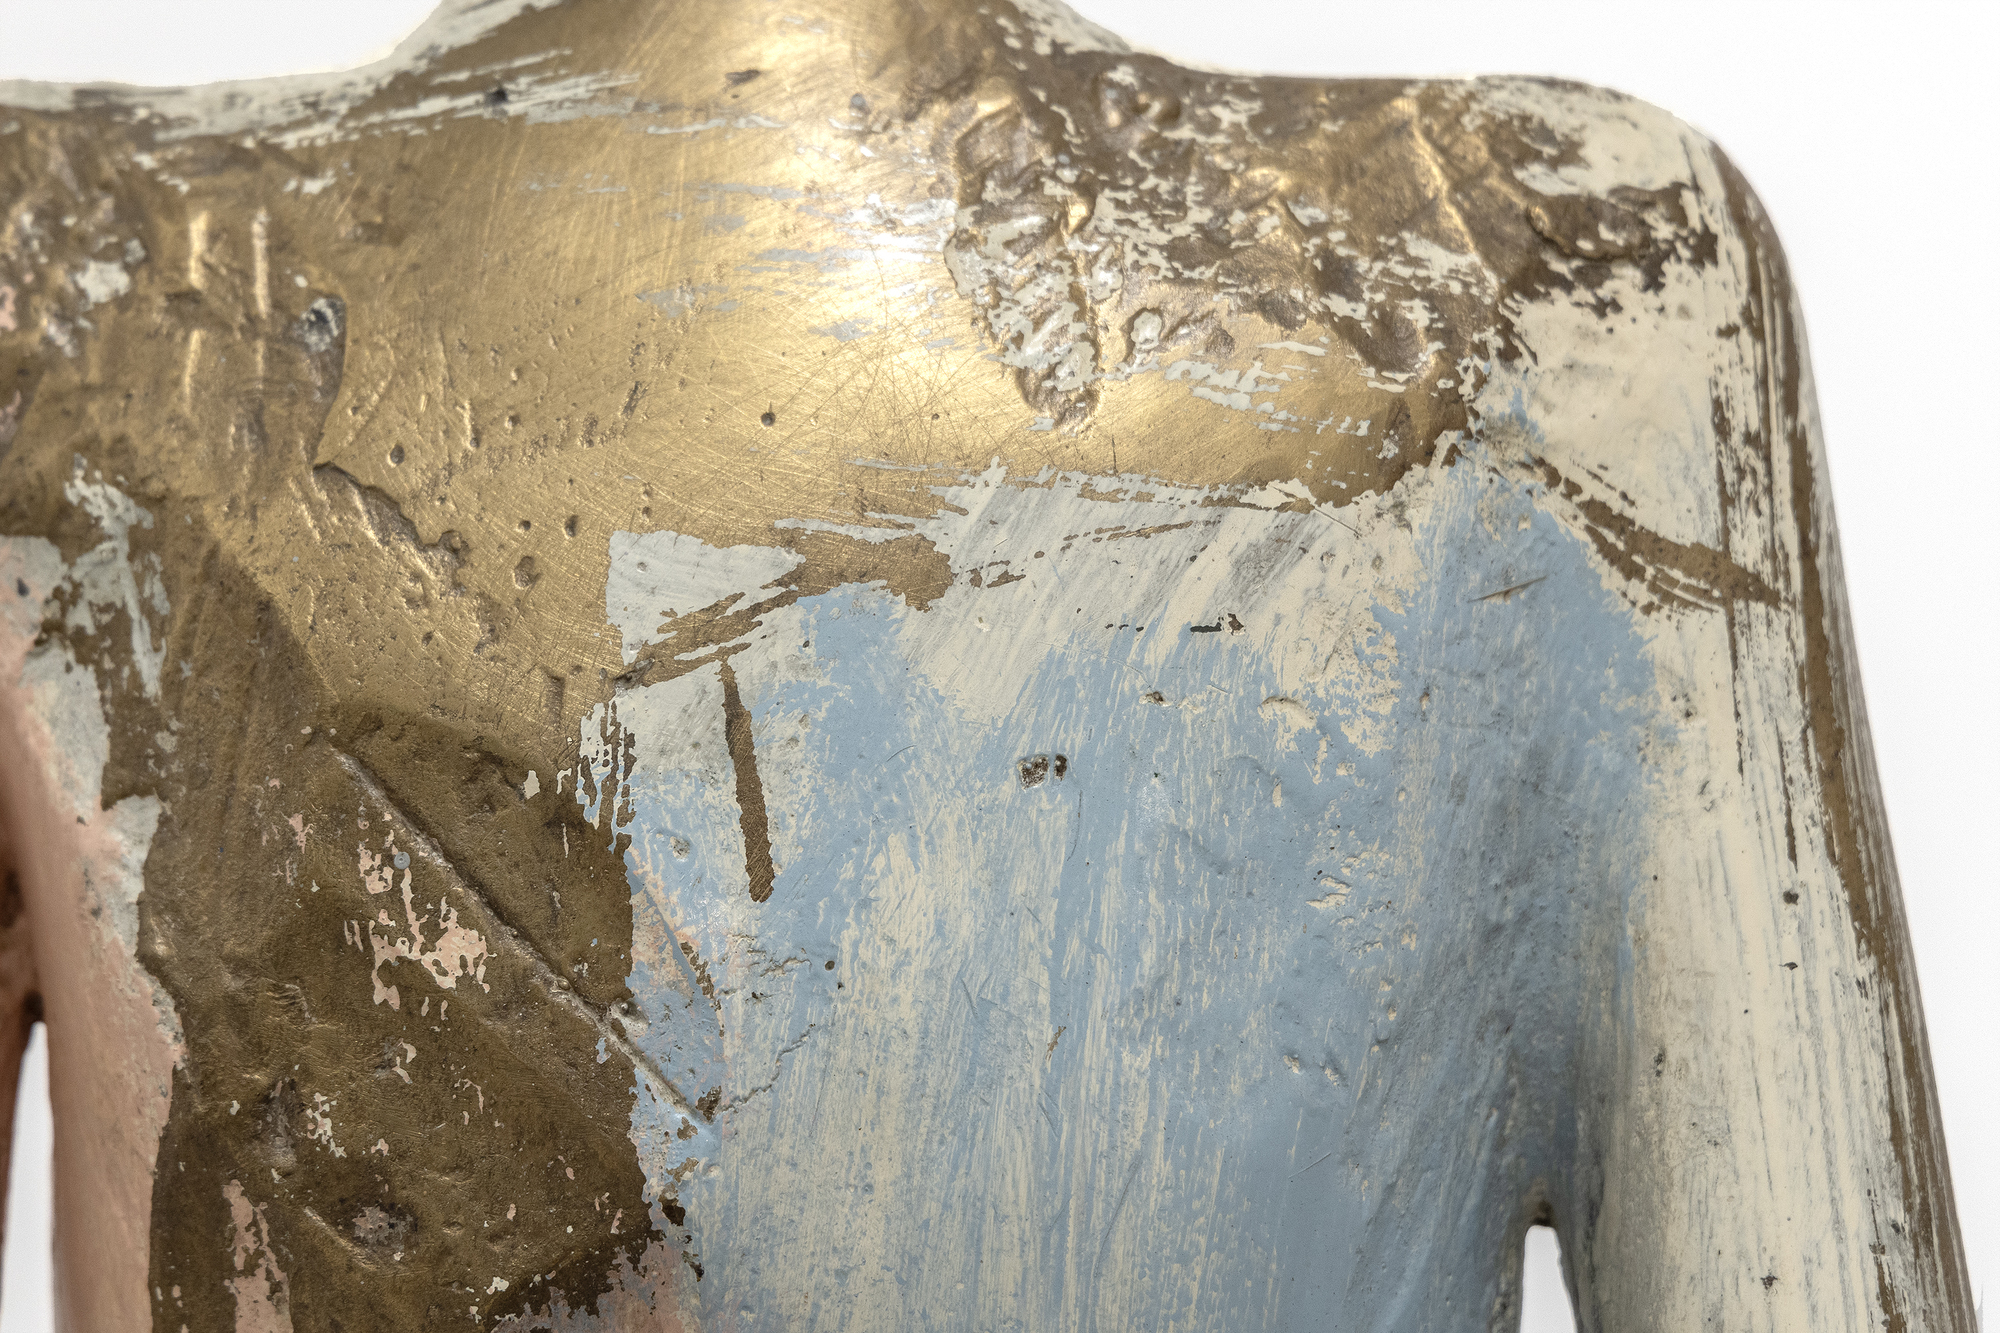 A finales de la década de 1990, Manuel Neri comenzó a transformar numerosas esculturas de escayola en bronce, volviendo con frecuencia a obras anteriores para producir nuevas versiones imaginadas de cada pieza. Estas series, casi indistinguibles en forma y superficie, exploran el impacto de diferentes combinaciones de color y marcas que implican diversas acciones, como incisiones, cepillados, raspados o capas de materiales. Experimentando con distintas técnicas de marcado, Neri pudo explorar la interacción entre forma, color, textura y luz. En el contexto de la Figura de pie n.º 3, Neri limitó su paleta a un esquema cromático análogo, diluyendo la pintura para crear sutiles gradaciones que realzan el exterior elegante y refinado de la escultura.